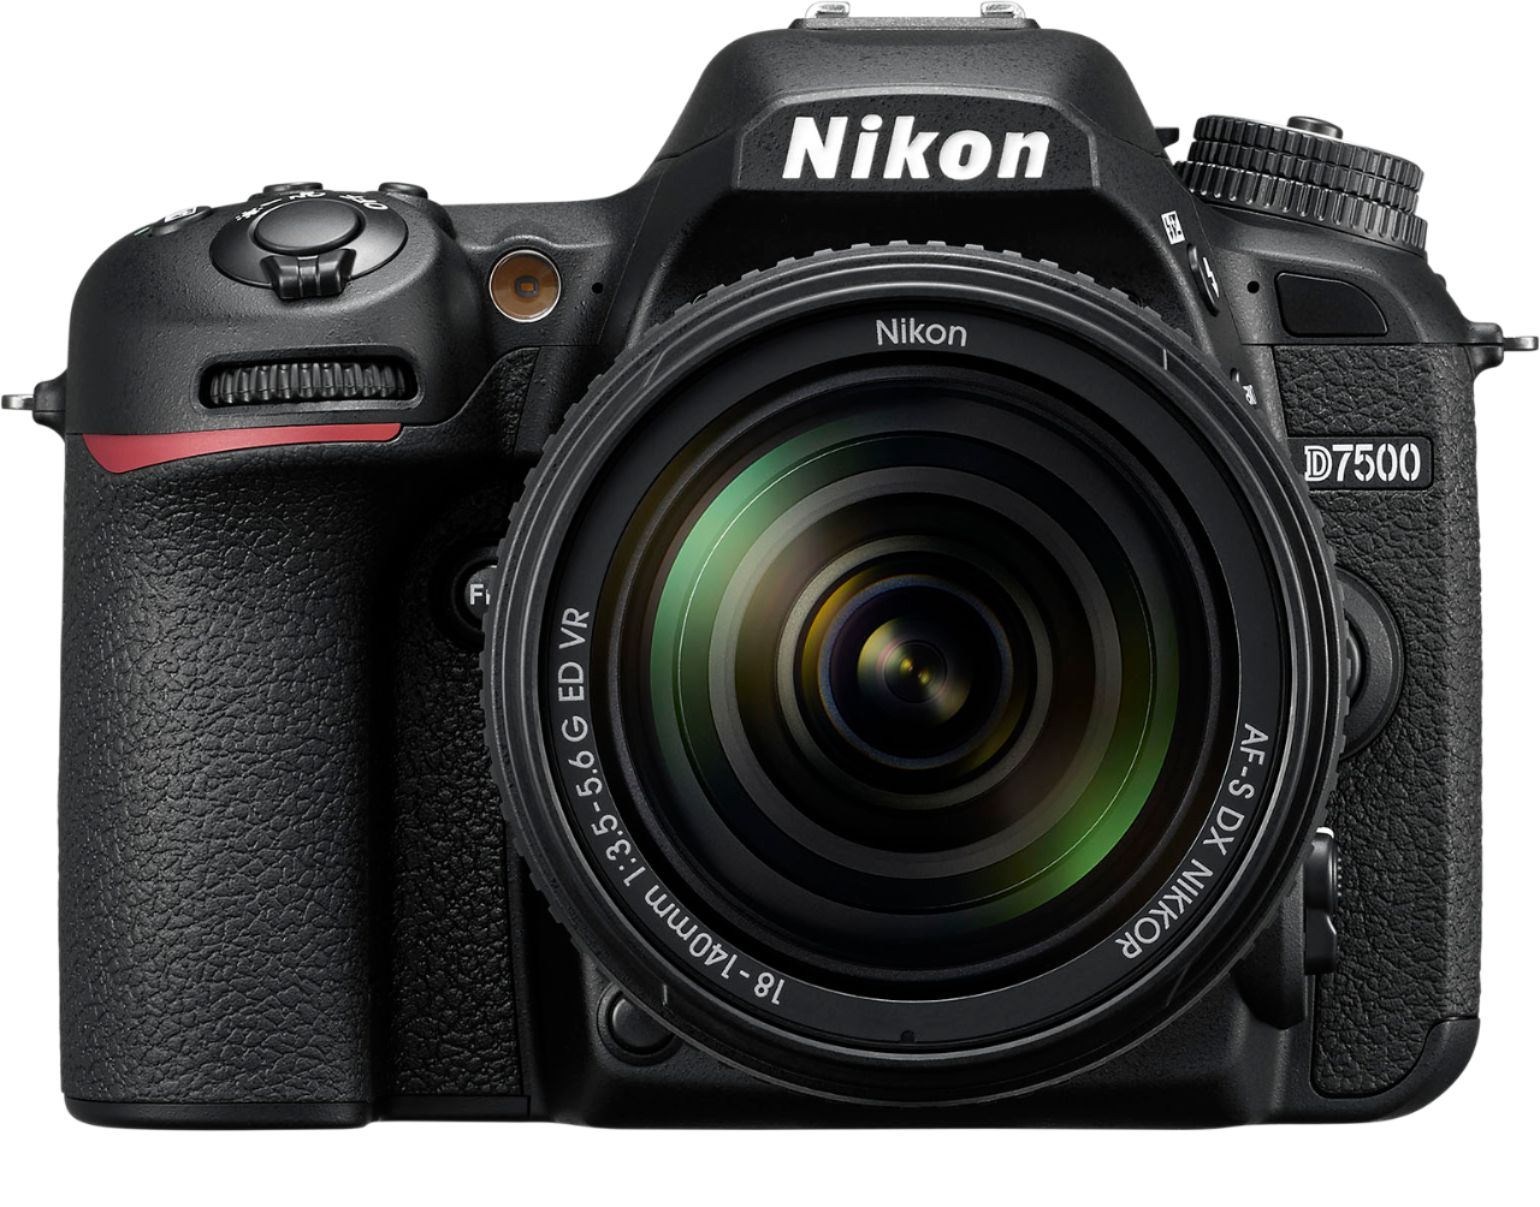 Nikon D7500 Dslr 4k Video Camera With Af S Dx Nikkor 18 140mm F 3 5 5 6g Ed Vr Lens Black 15 Best Buy